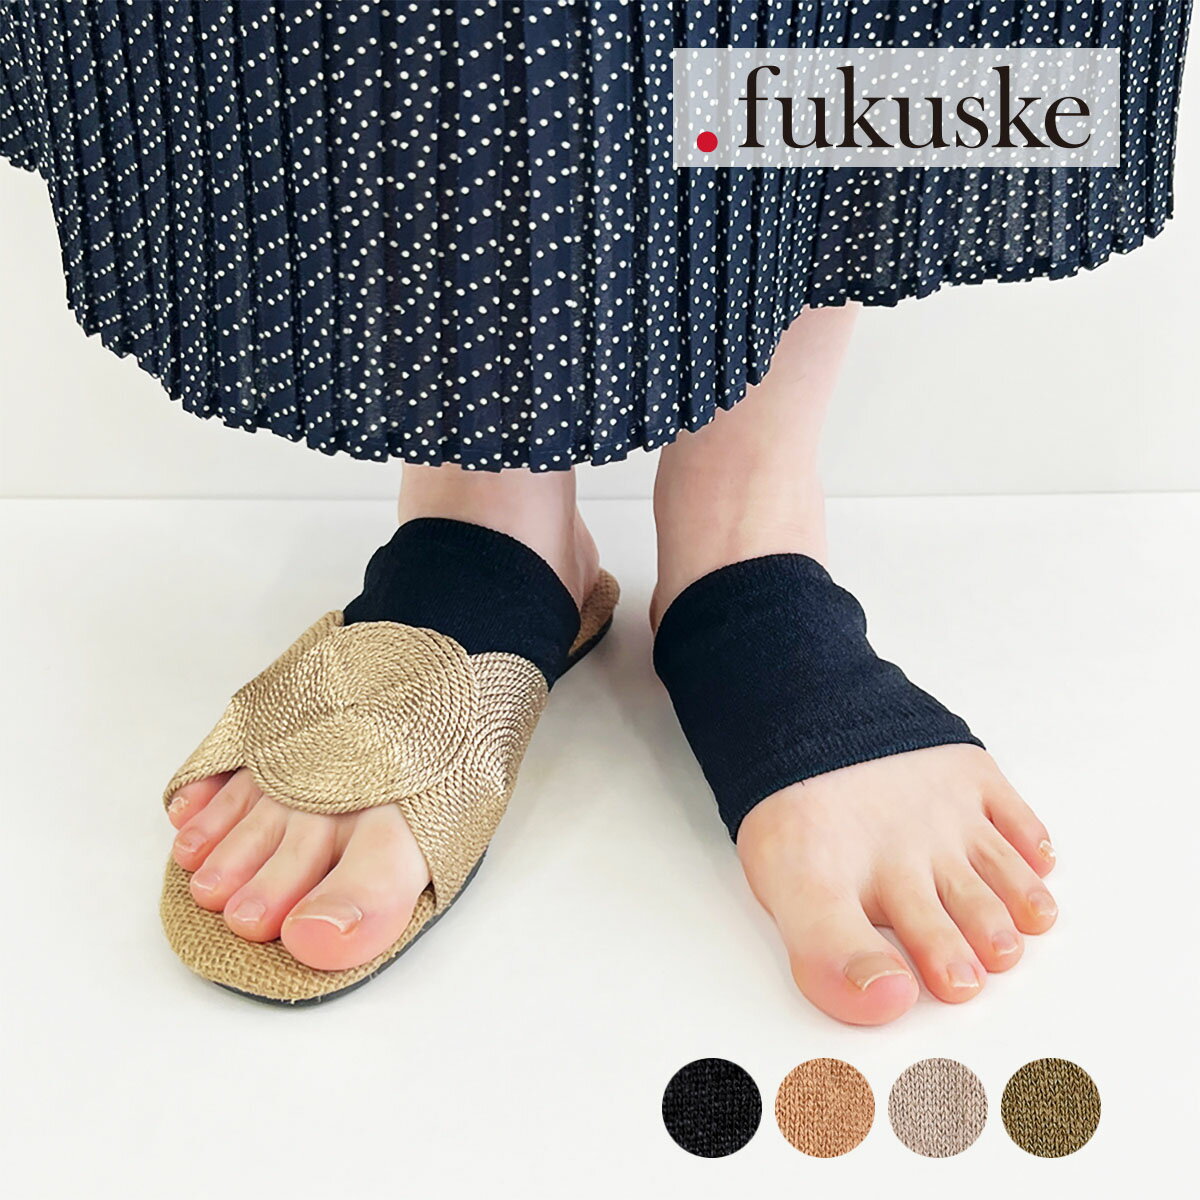 福助 靴下 レディース .fukuske(ドット福助) ： 無地 パーツソックス チューブタイプ 和紙素材(3130-071) 婦人 女性 レディース 靴下 フクスケ fukuske 福助 公式